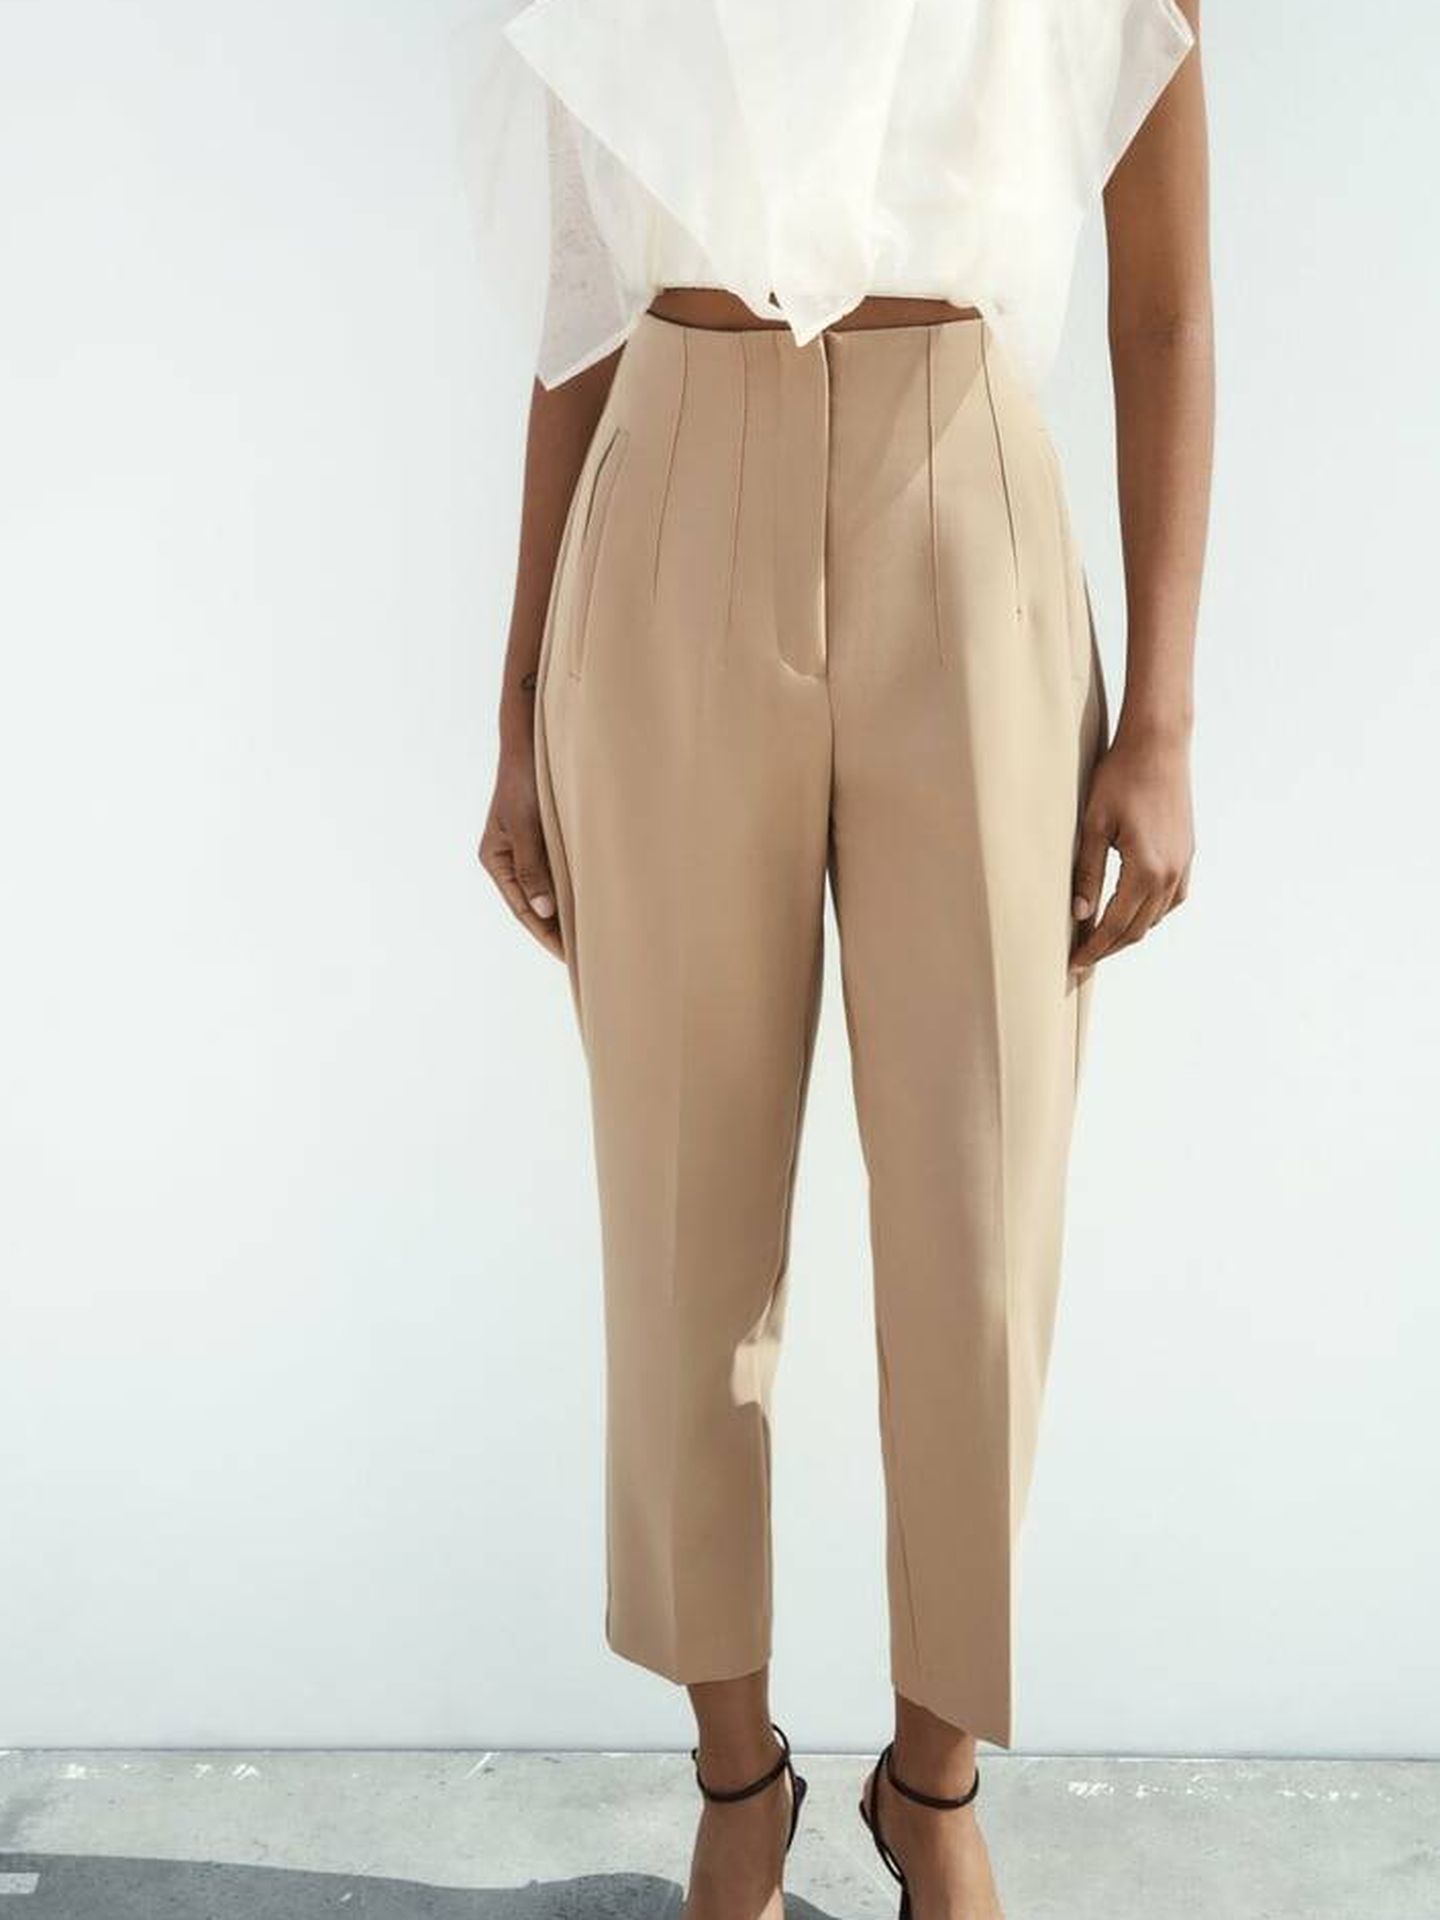 Pantalón de tiro alto con detalle de costuras de Zara. (Cortesía)